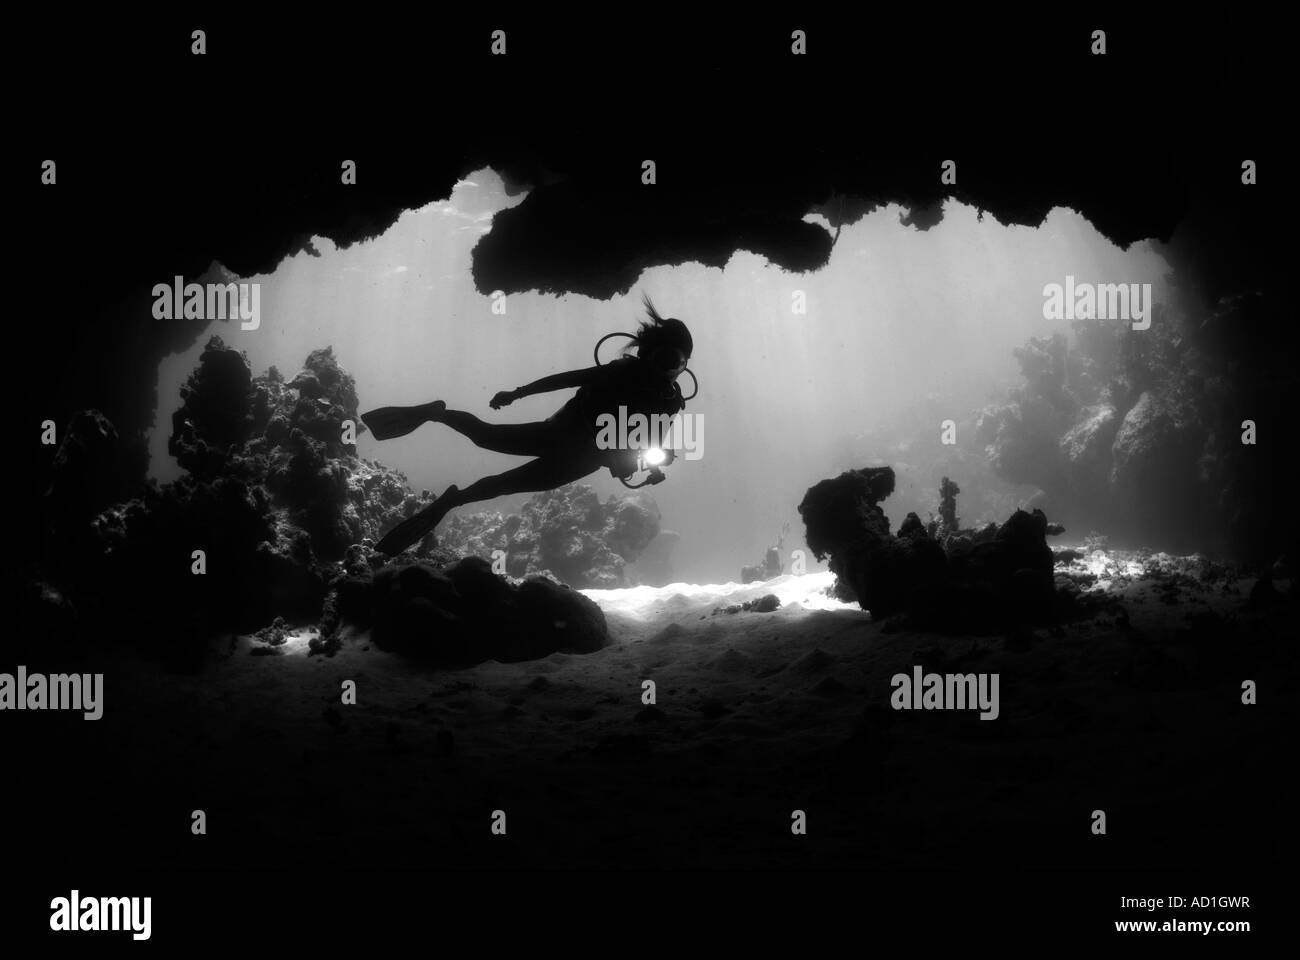 Grotta sottomarina di Anegada Isole Vergini Britanniche BVI, femmina subacqueo, silhouette, scuba diving,, oceano mare, bianco e nero, Foto Stock